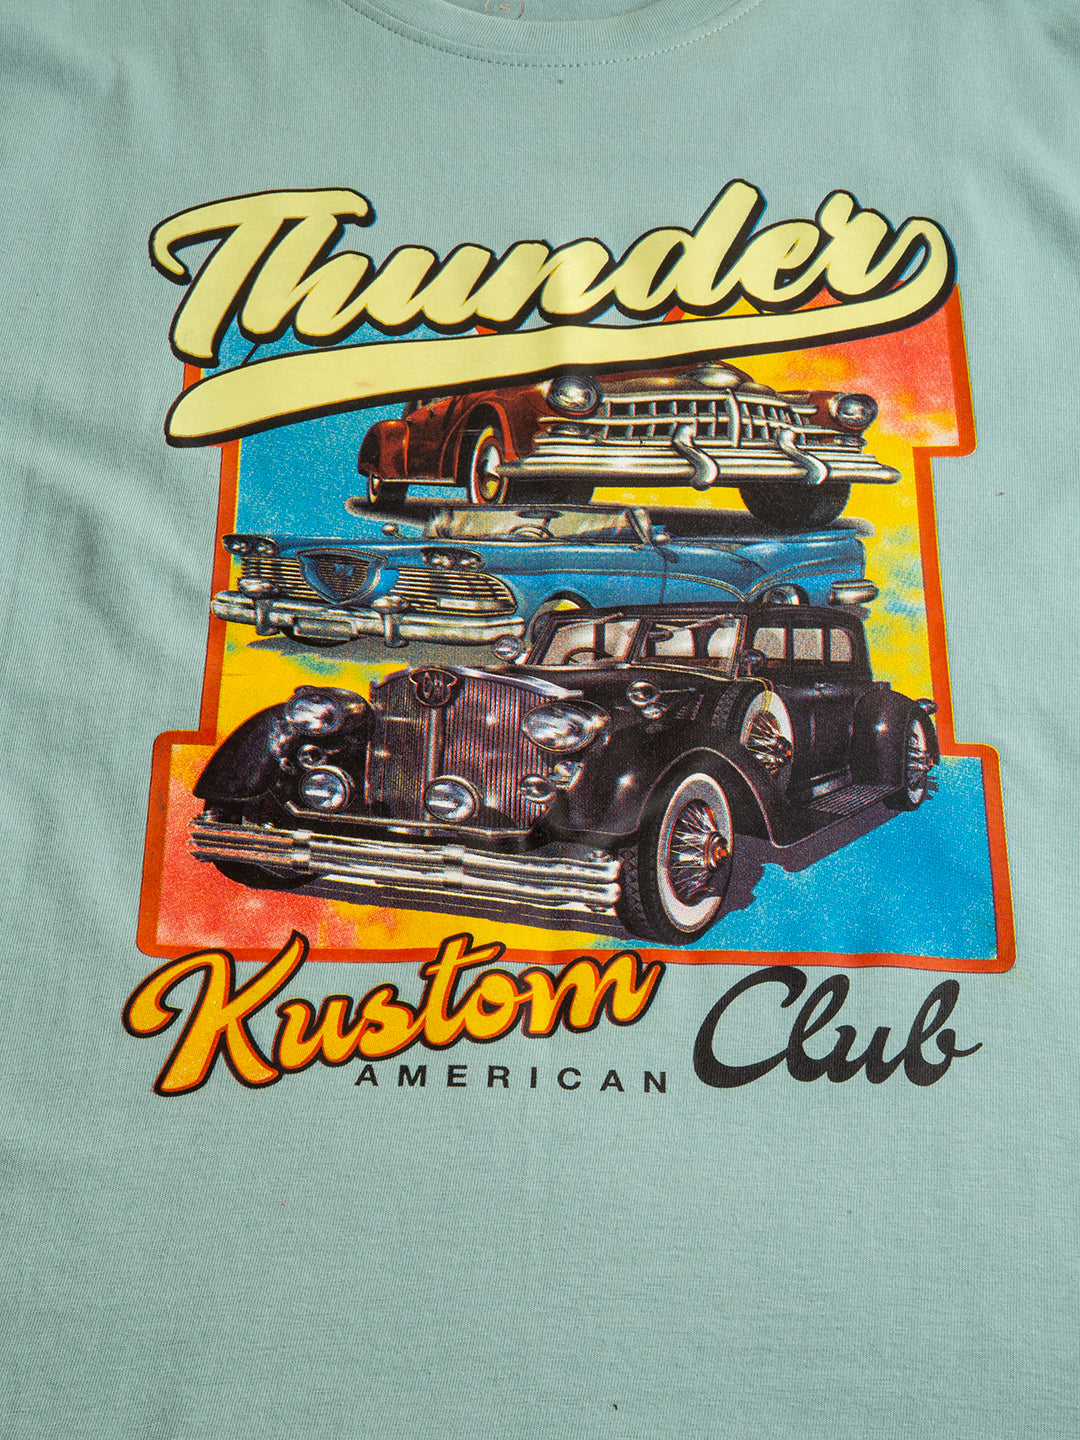 Thunder Kustum Club Women's Oversized T-Shirt